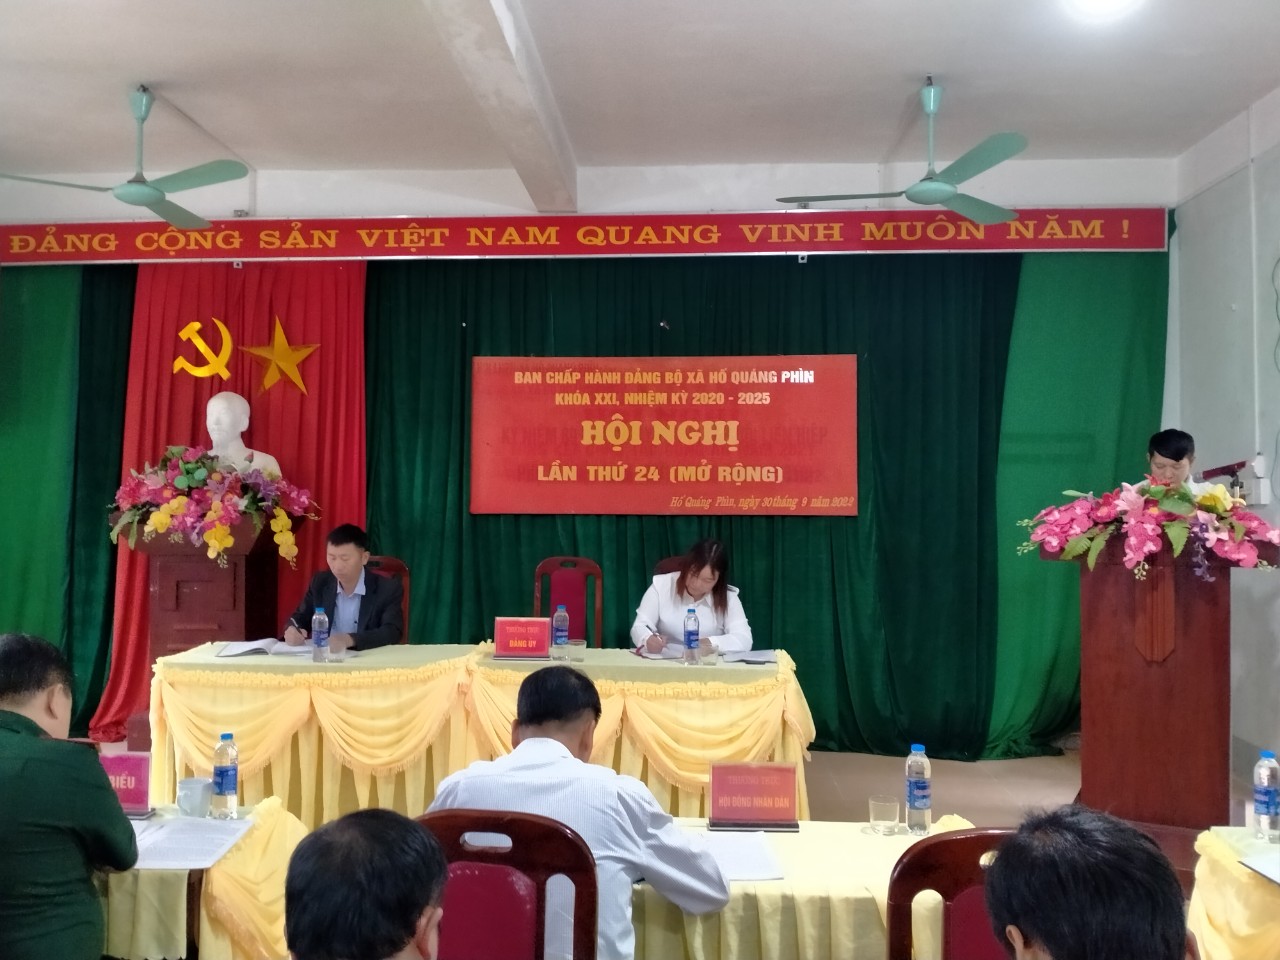 Ban chấp hành Đảng bộ xã tổ chức Hội nghị lần thứ 24, khóa XXI, nhiệm kỳ 2020 - 20225 